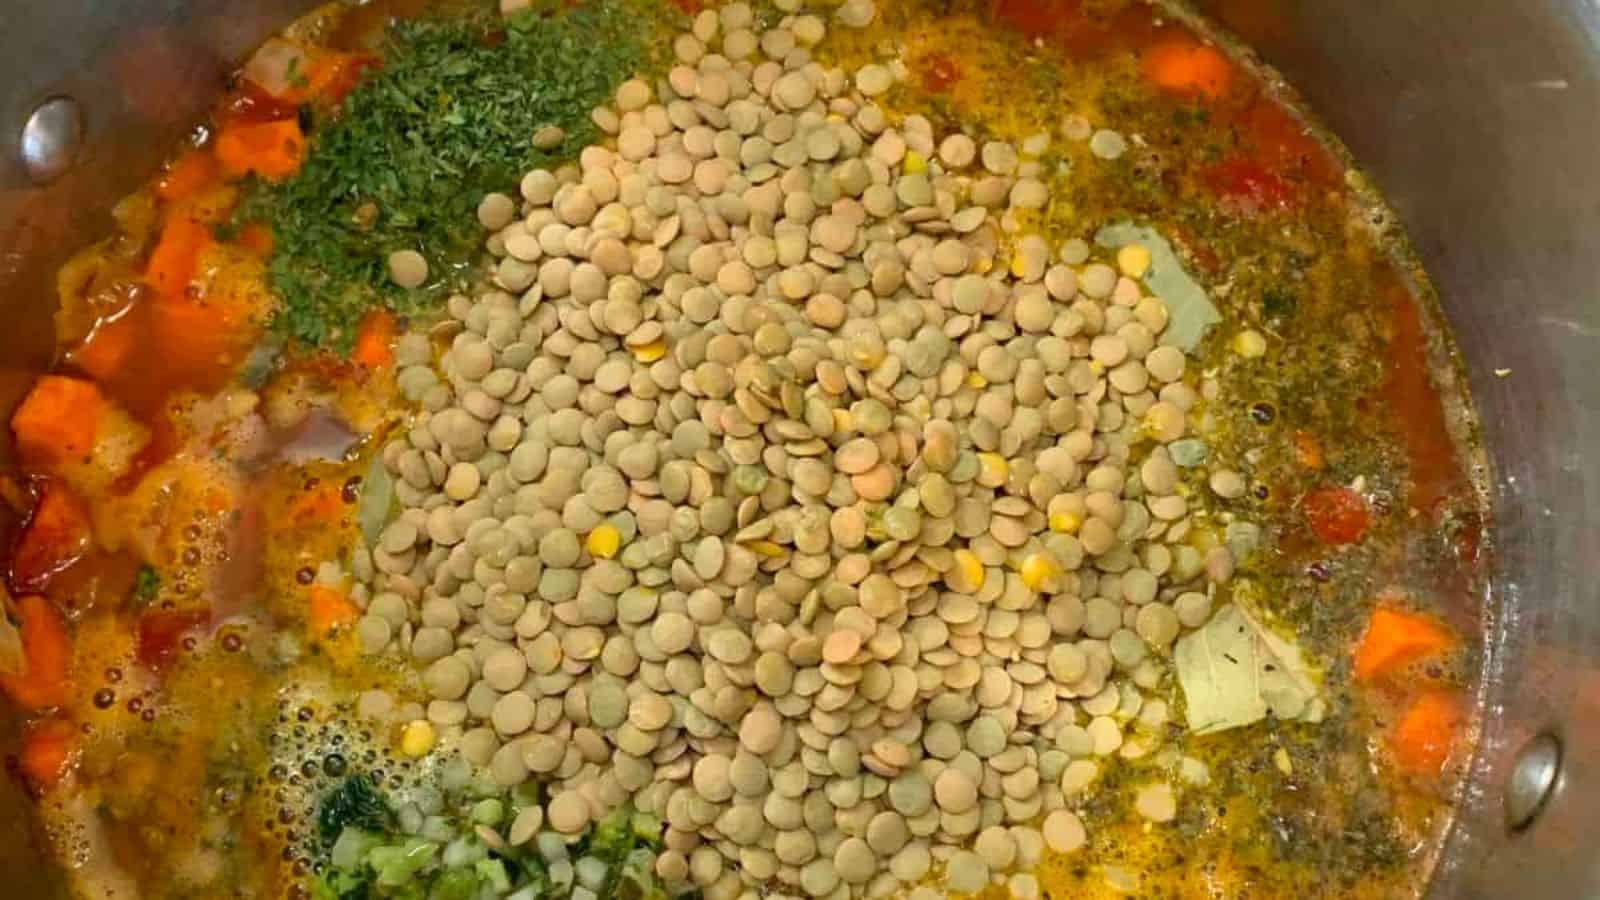 A pot of veggie lentil soup, filled with vegetables and lentils.